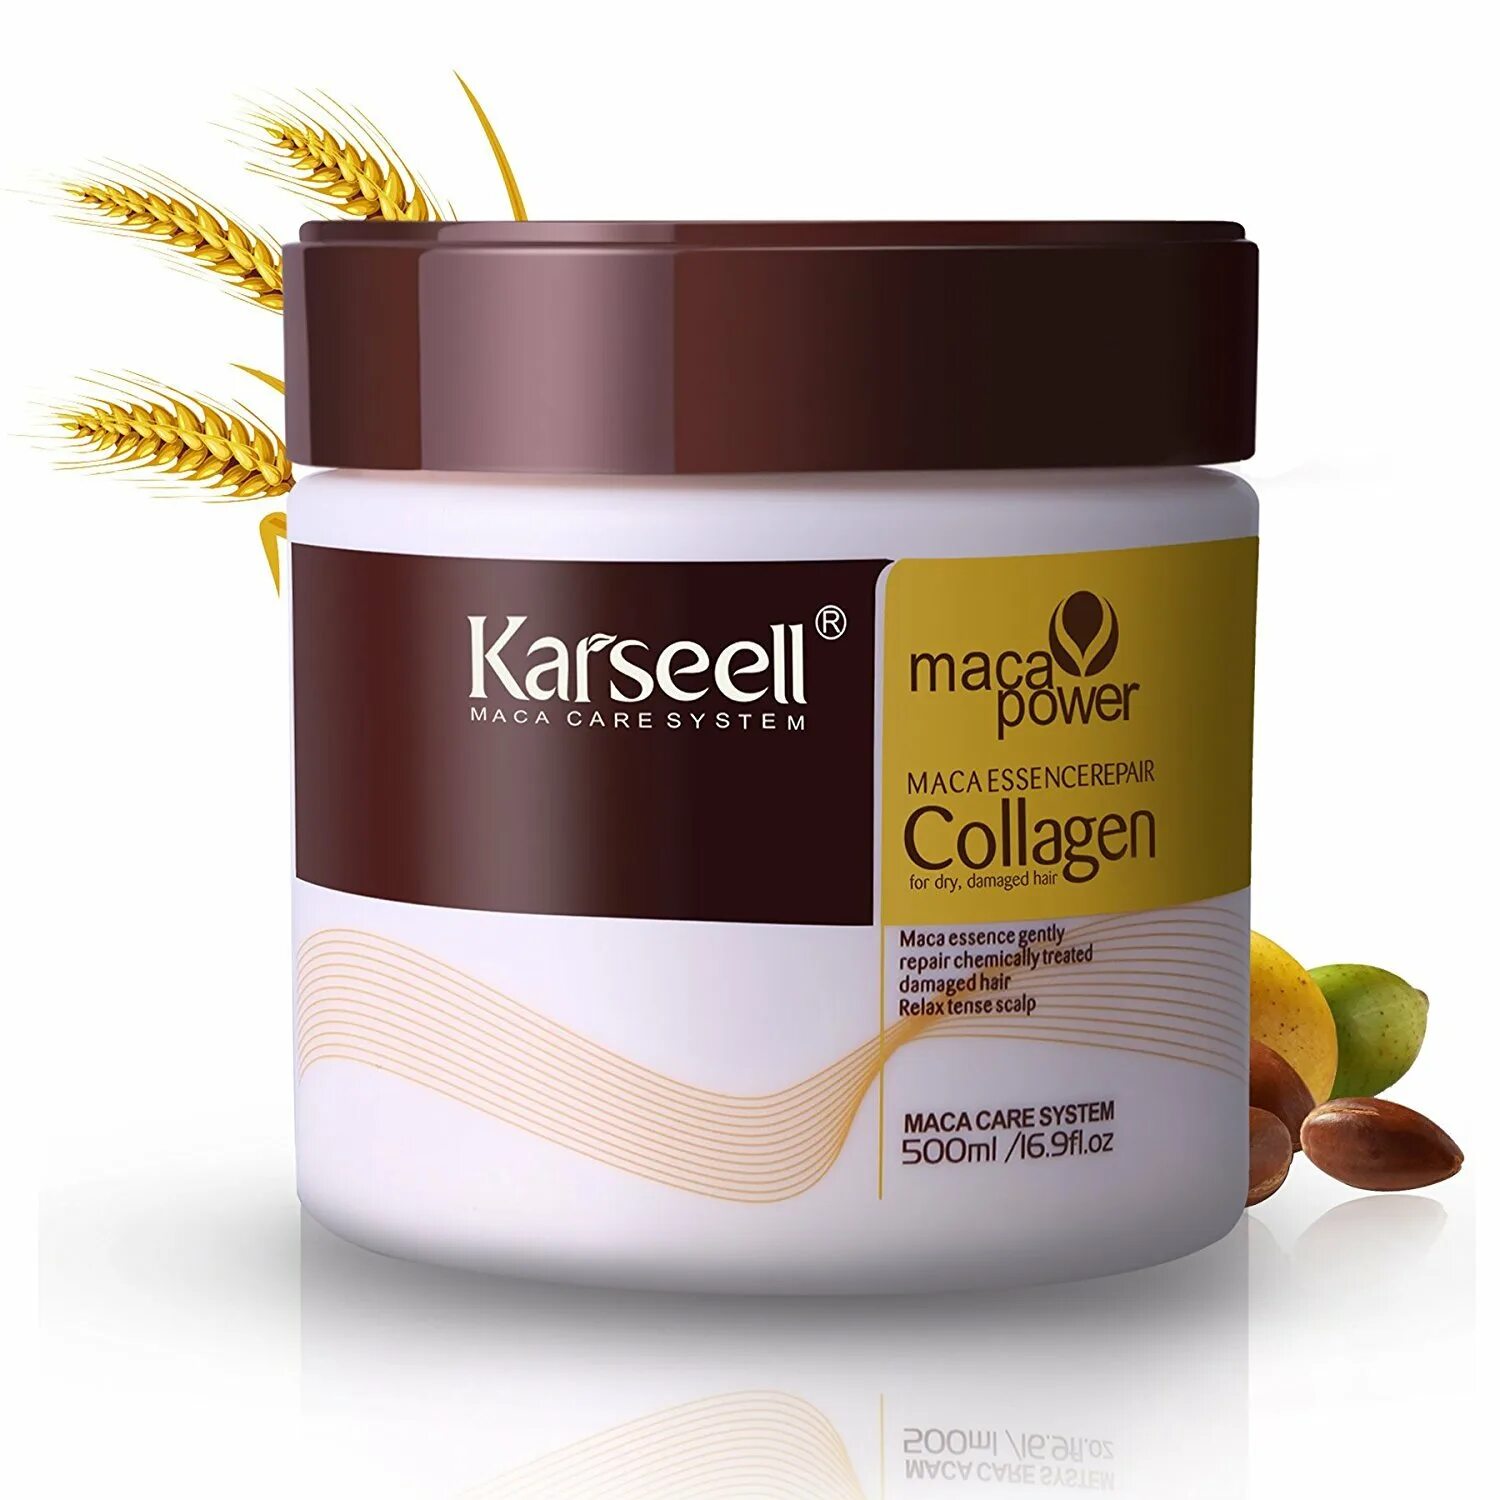 Karseell Collagen маска. Maca Power Collagen для волос. Collagen treatment Argan для волос. Karseell Collagen для волос. Karseell маска отзывы